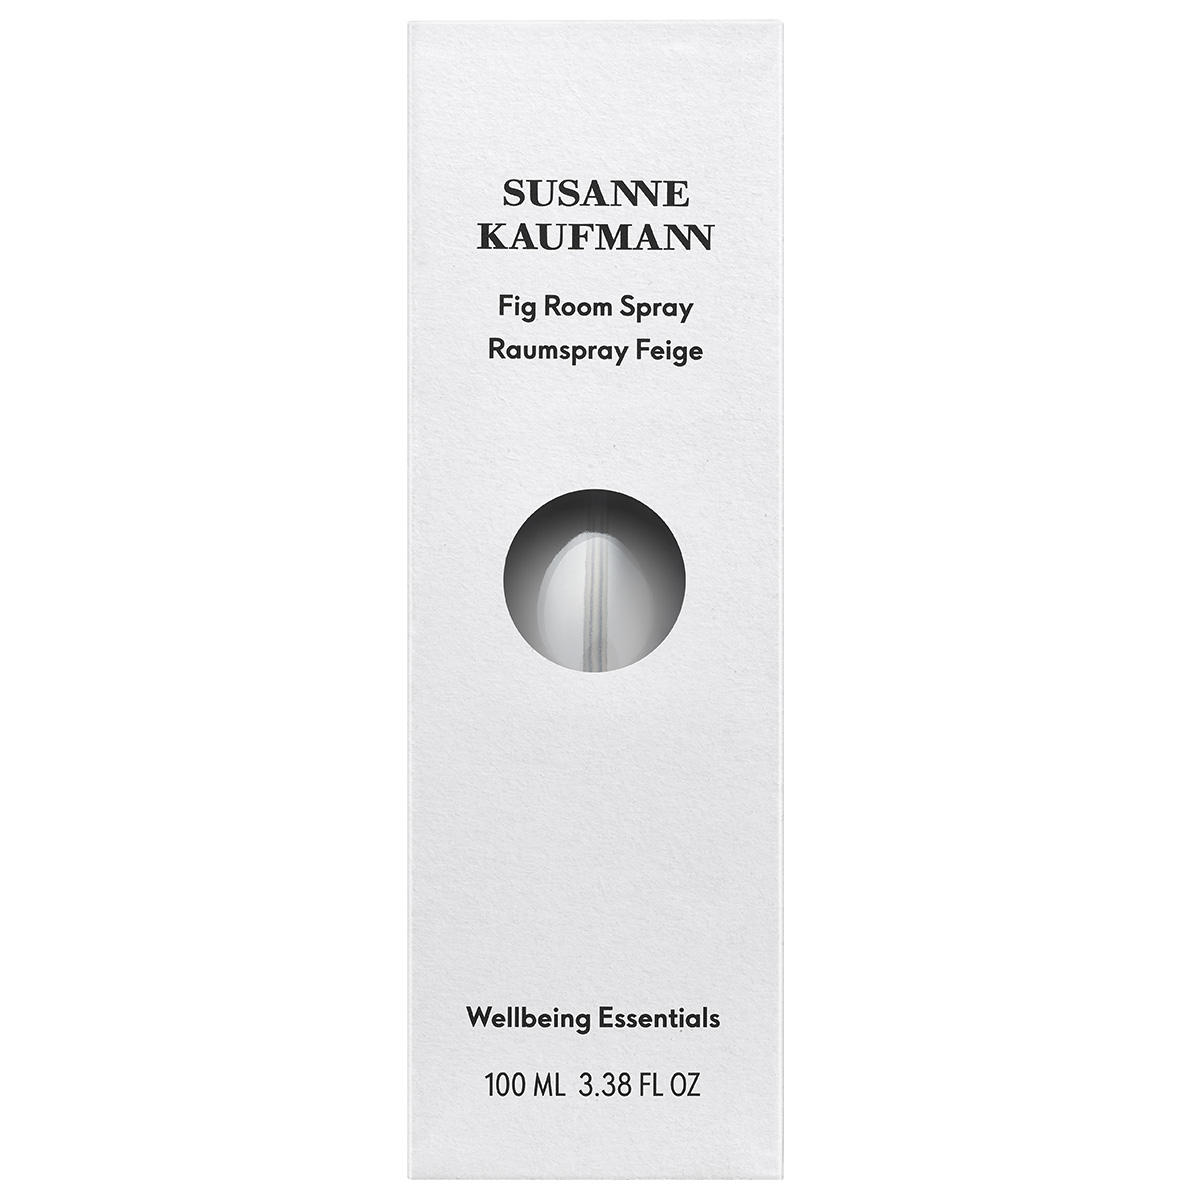 Susanne Kaufmann Fig Room Spray 100 ml - 3